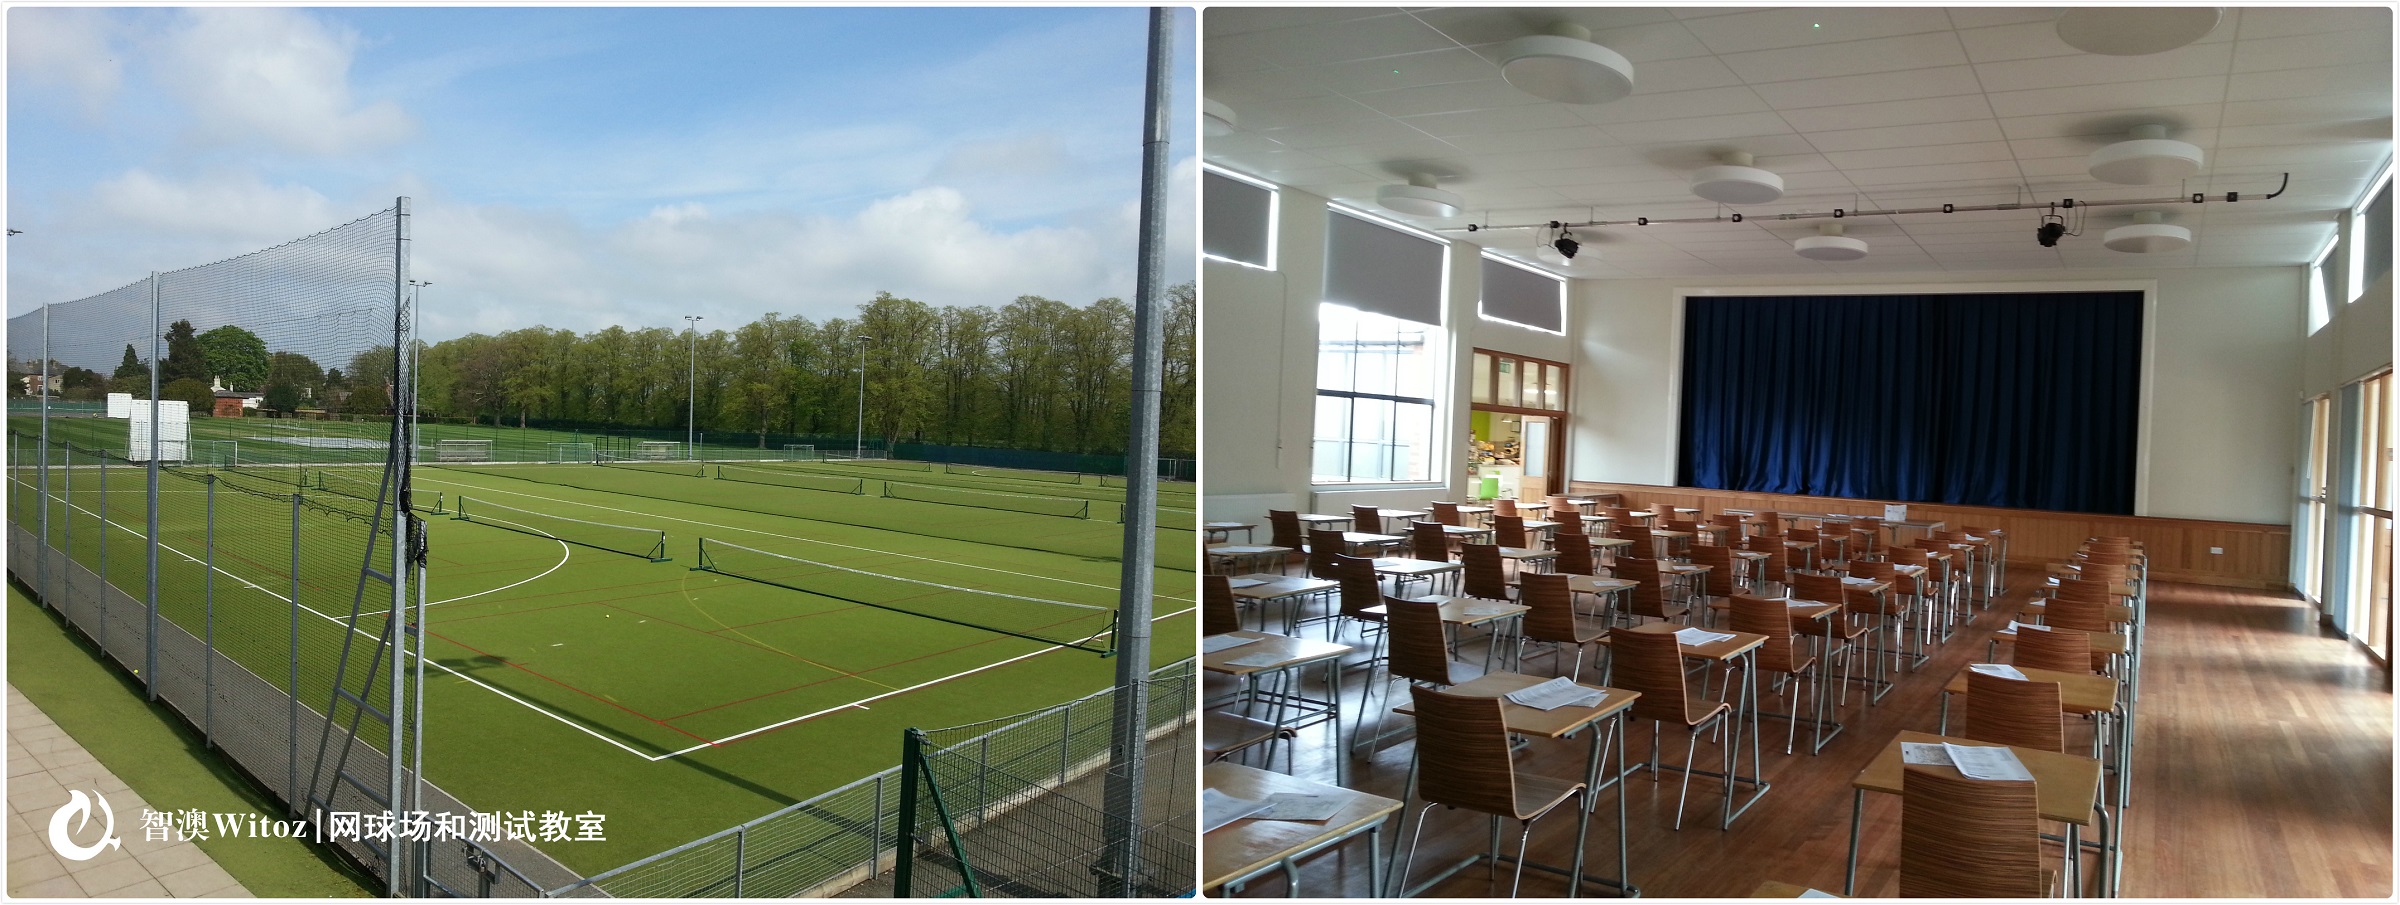 网球场和测试教室1-1.jpg